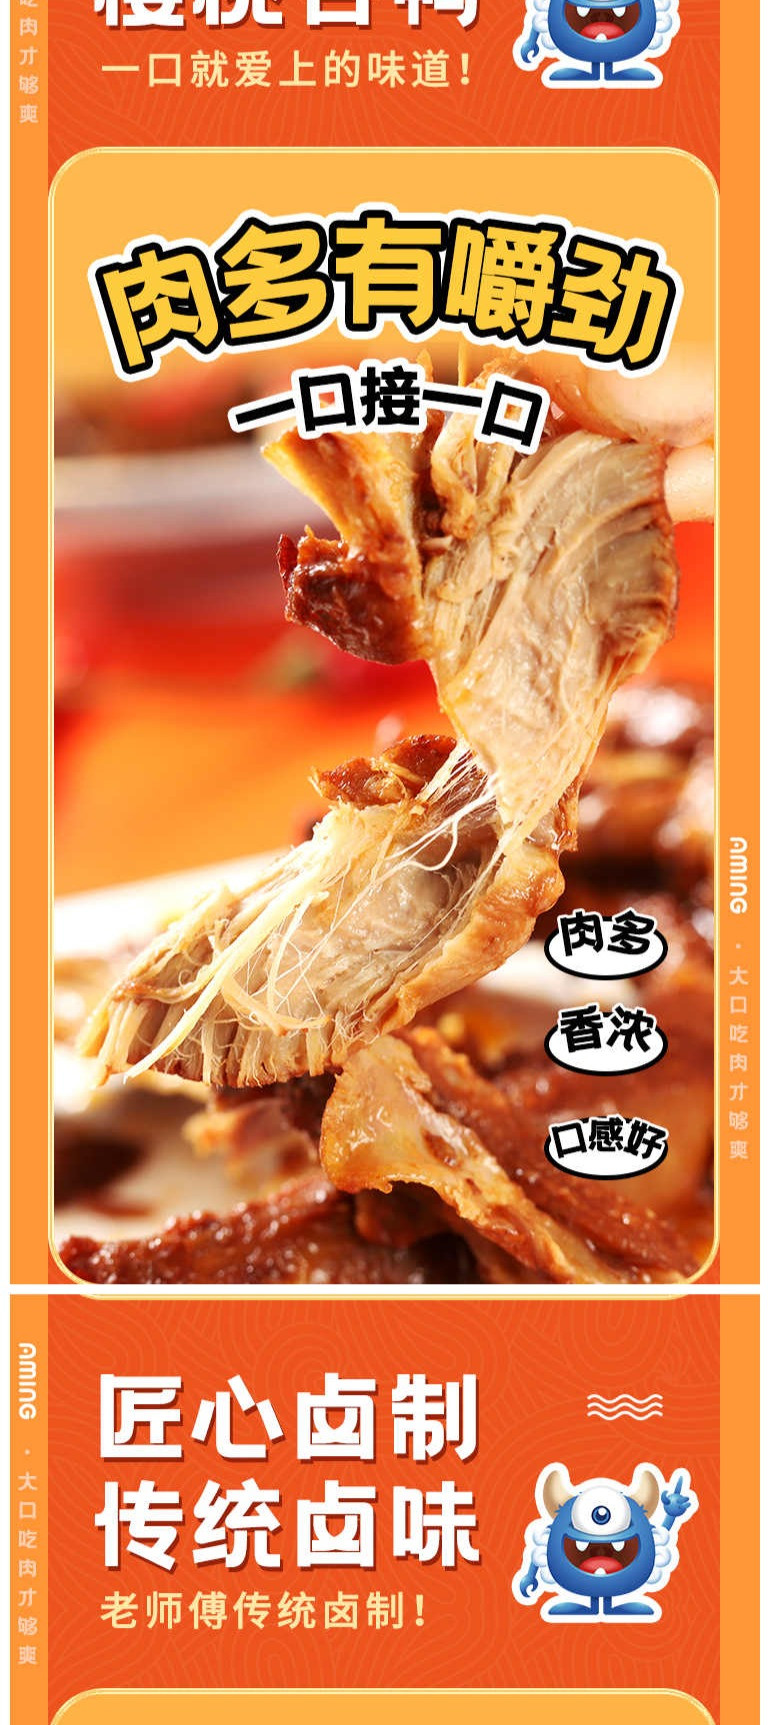  【上海邮政】 阿明 鸭锁骨(香辣味)115g